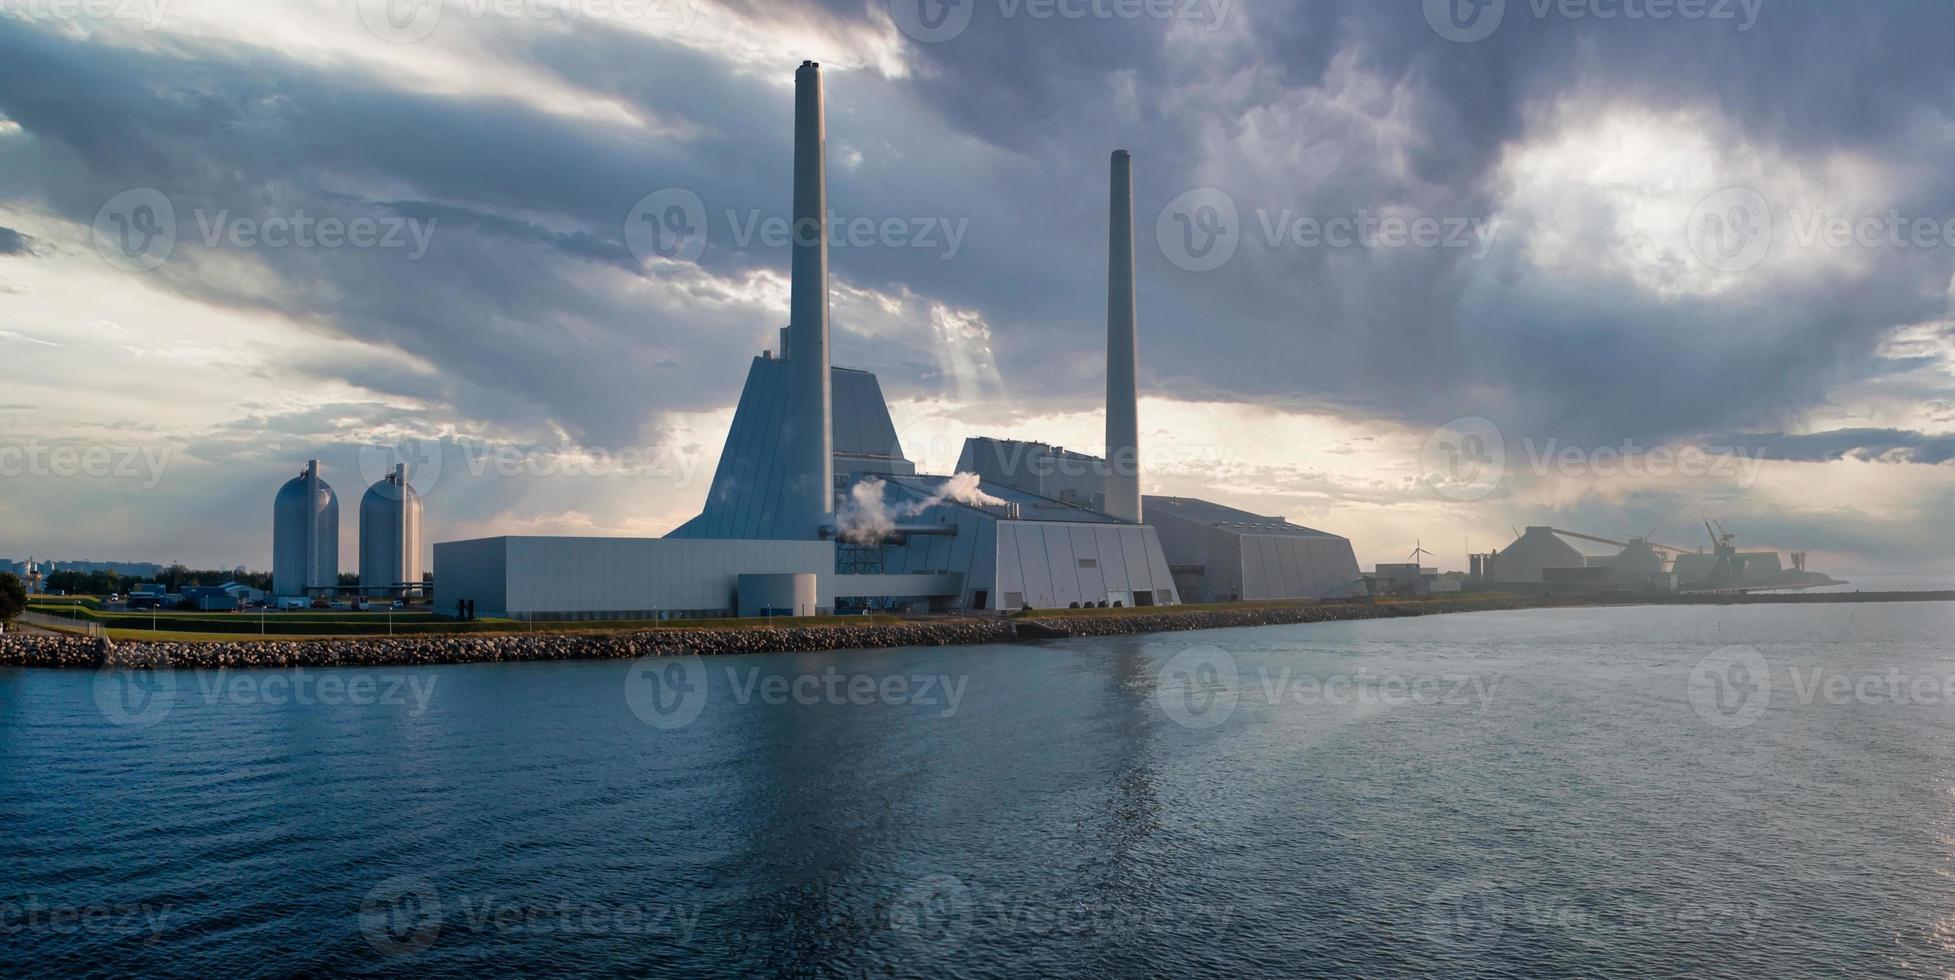 vue aérienne de la centrale électrique. l'une des centrales électriques les plus belles et les plus respectueuses de l'environnement au monde. esg énergie verte. photo